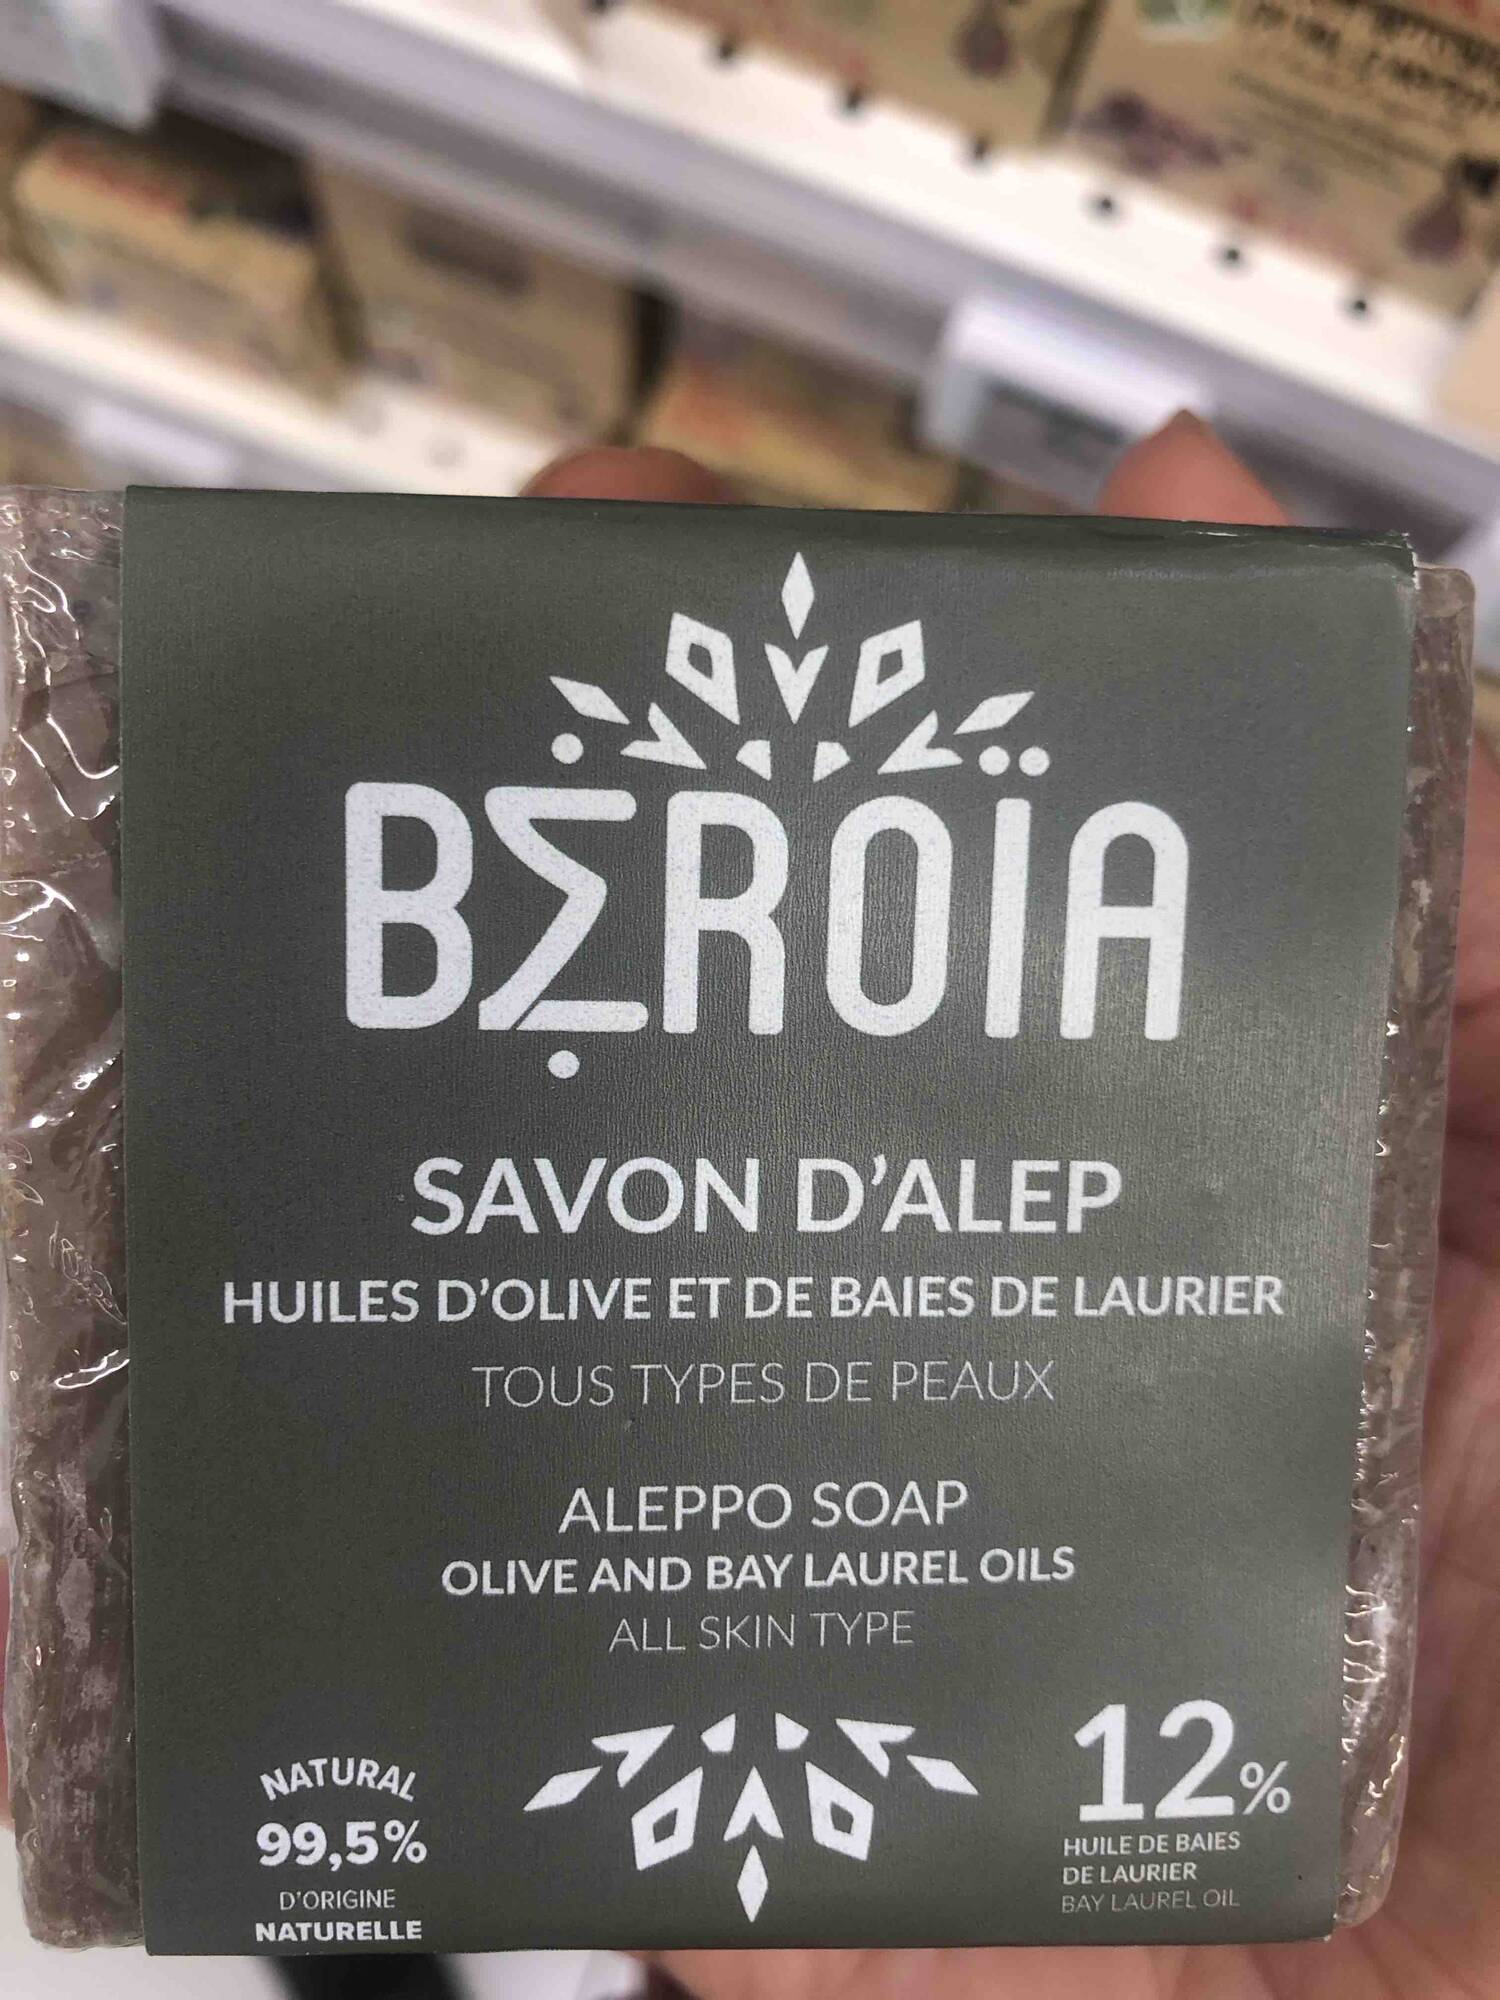 MAÎTRE SAVONNIER - Savon d'Alep huiles d'olive et de baies de laurier